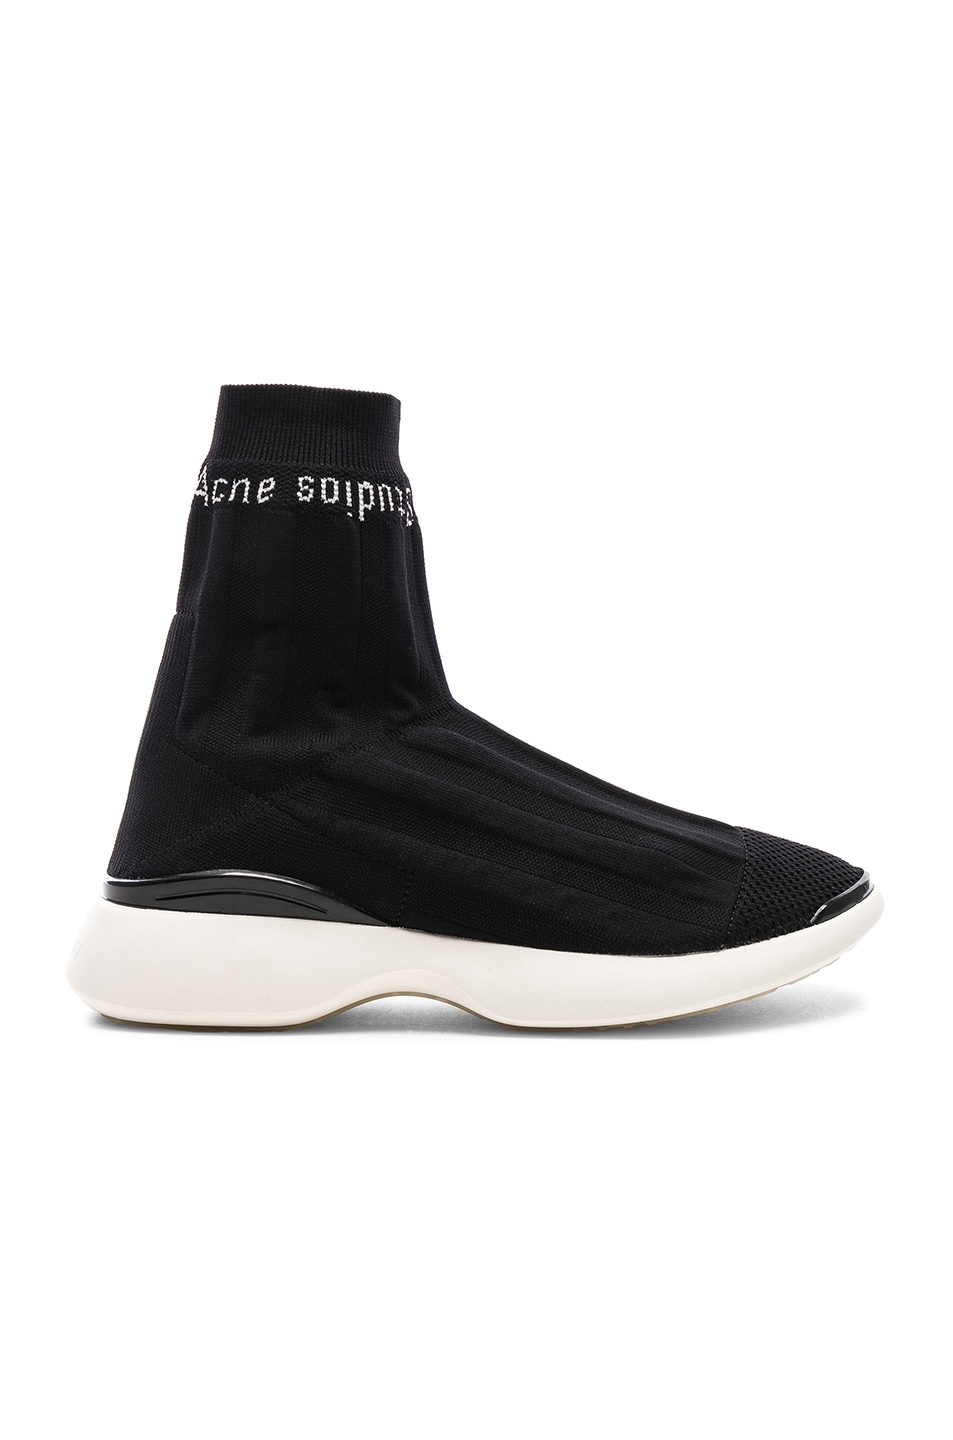 Image 1 of Acne Studios Batilda Sock Sneakers in Black & White